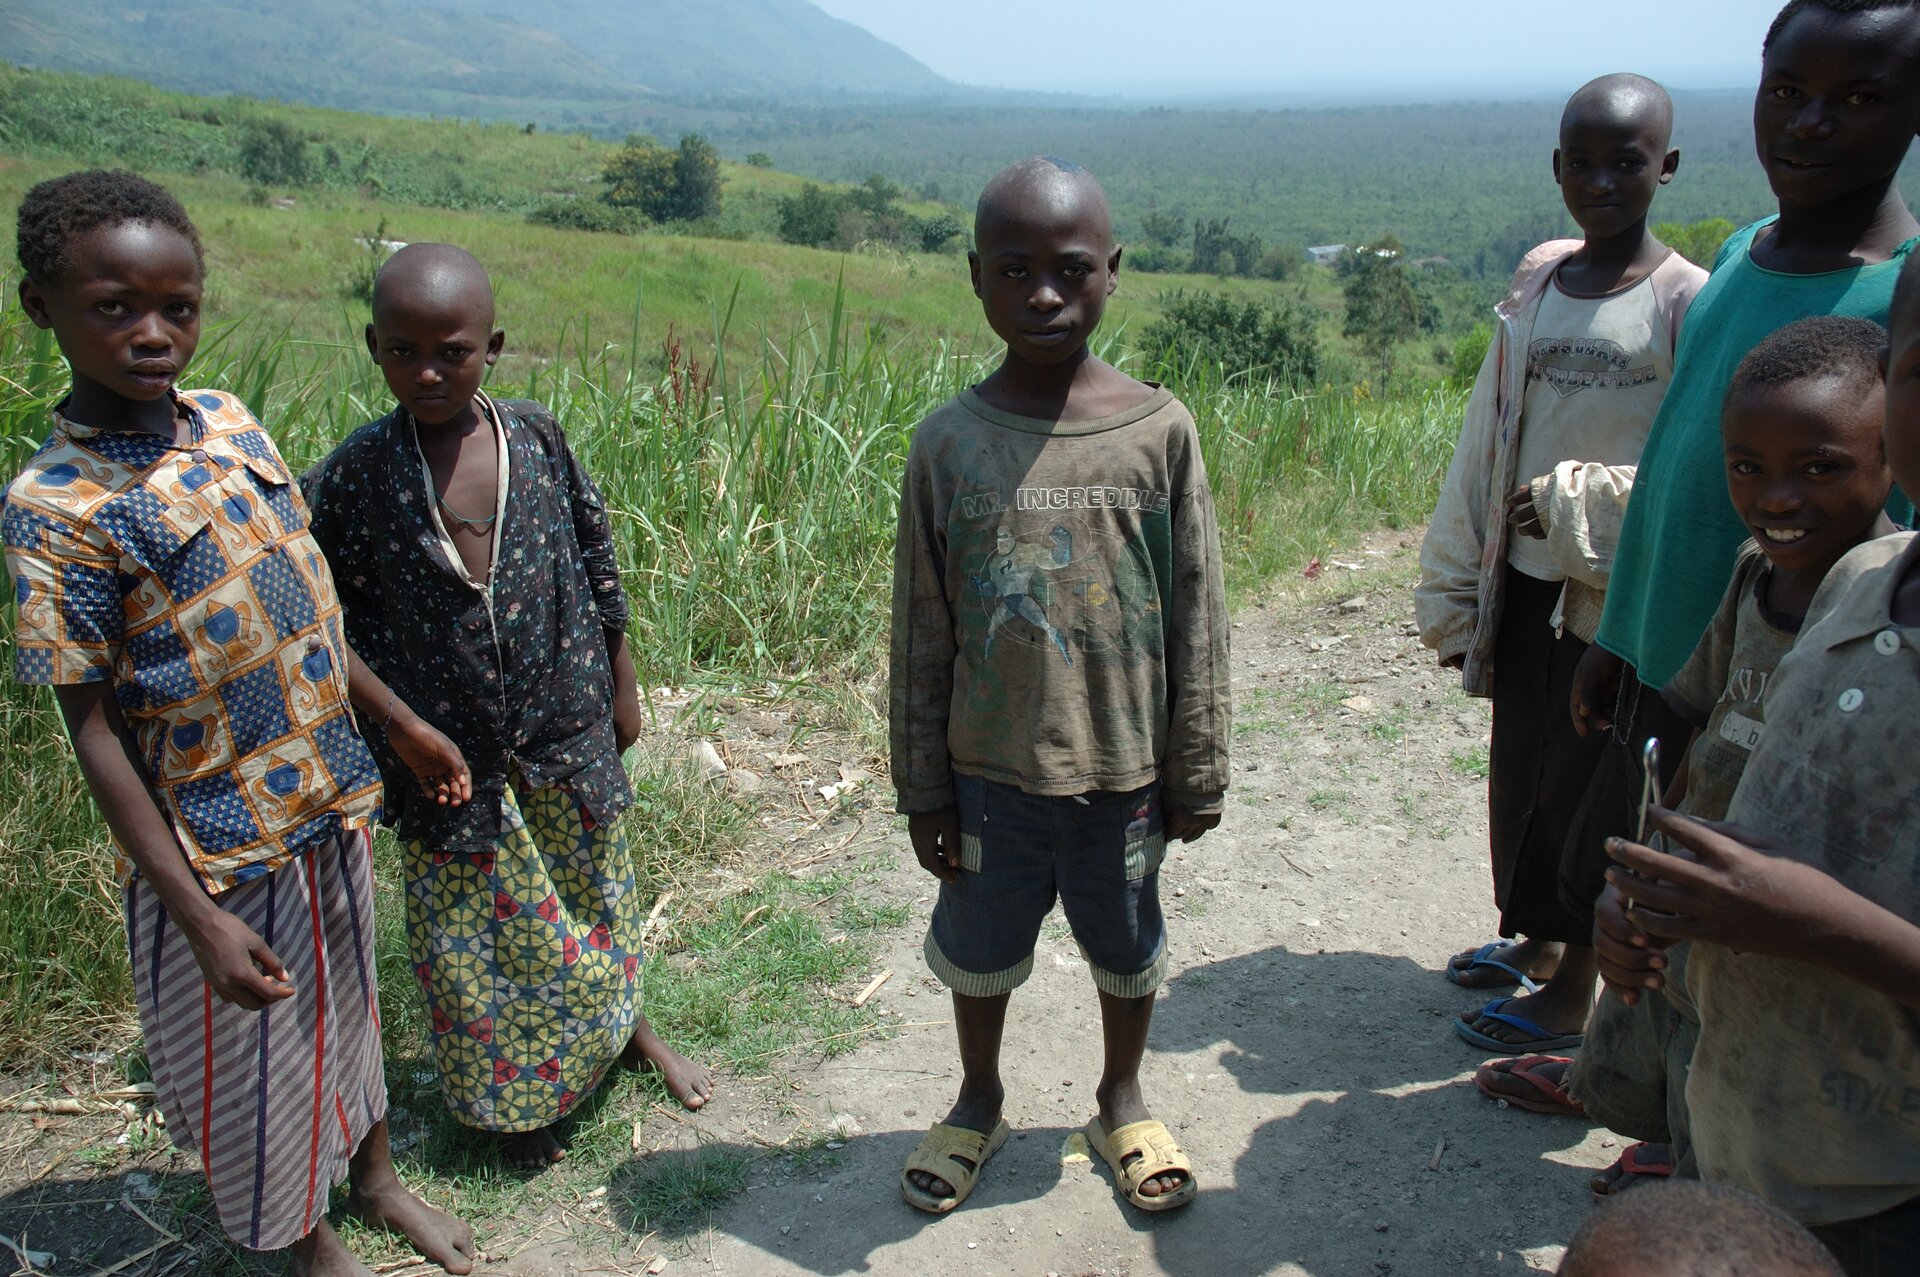 Na zdjęciu znajduje się kilka ciemnoskórych osób z grupy społecznej Hutu zamieszkującej Rwandę. Kobiety są ubrane w długie spódnice i kolorowe bluzki, mężczyźni mają ogolone głowy, są ubrani w krótkie spodenki i koszulki. 